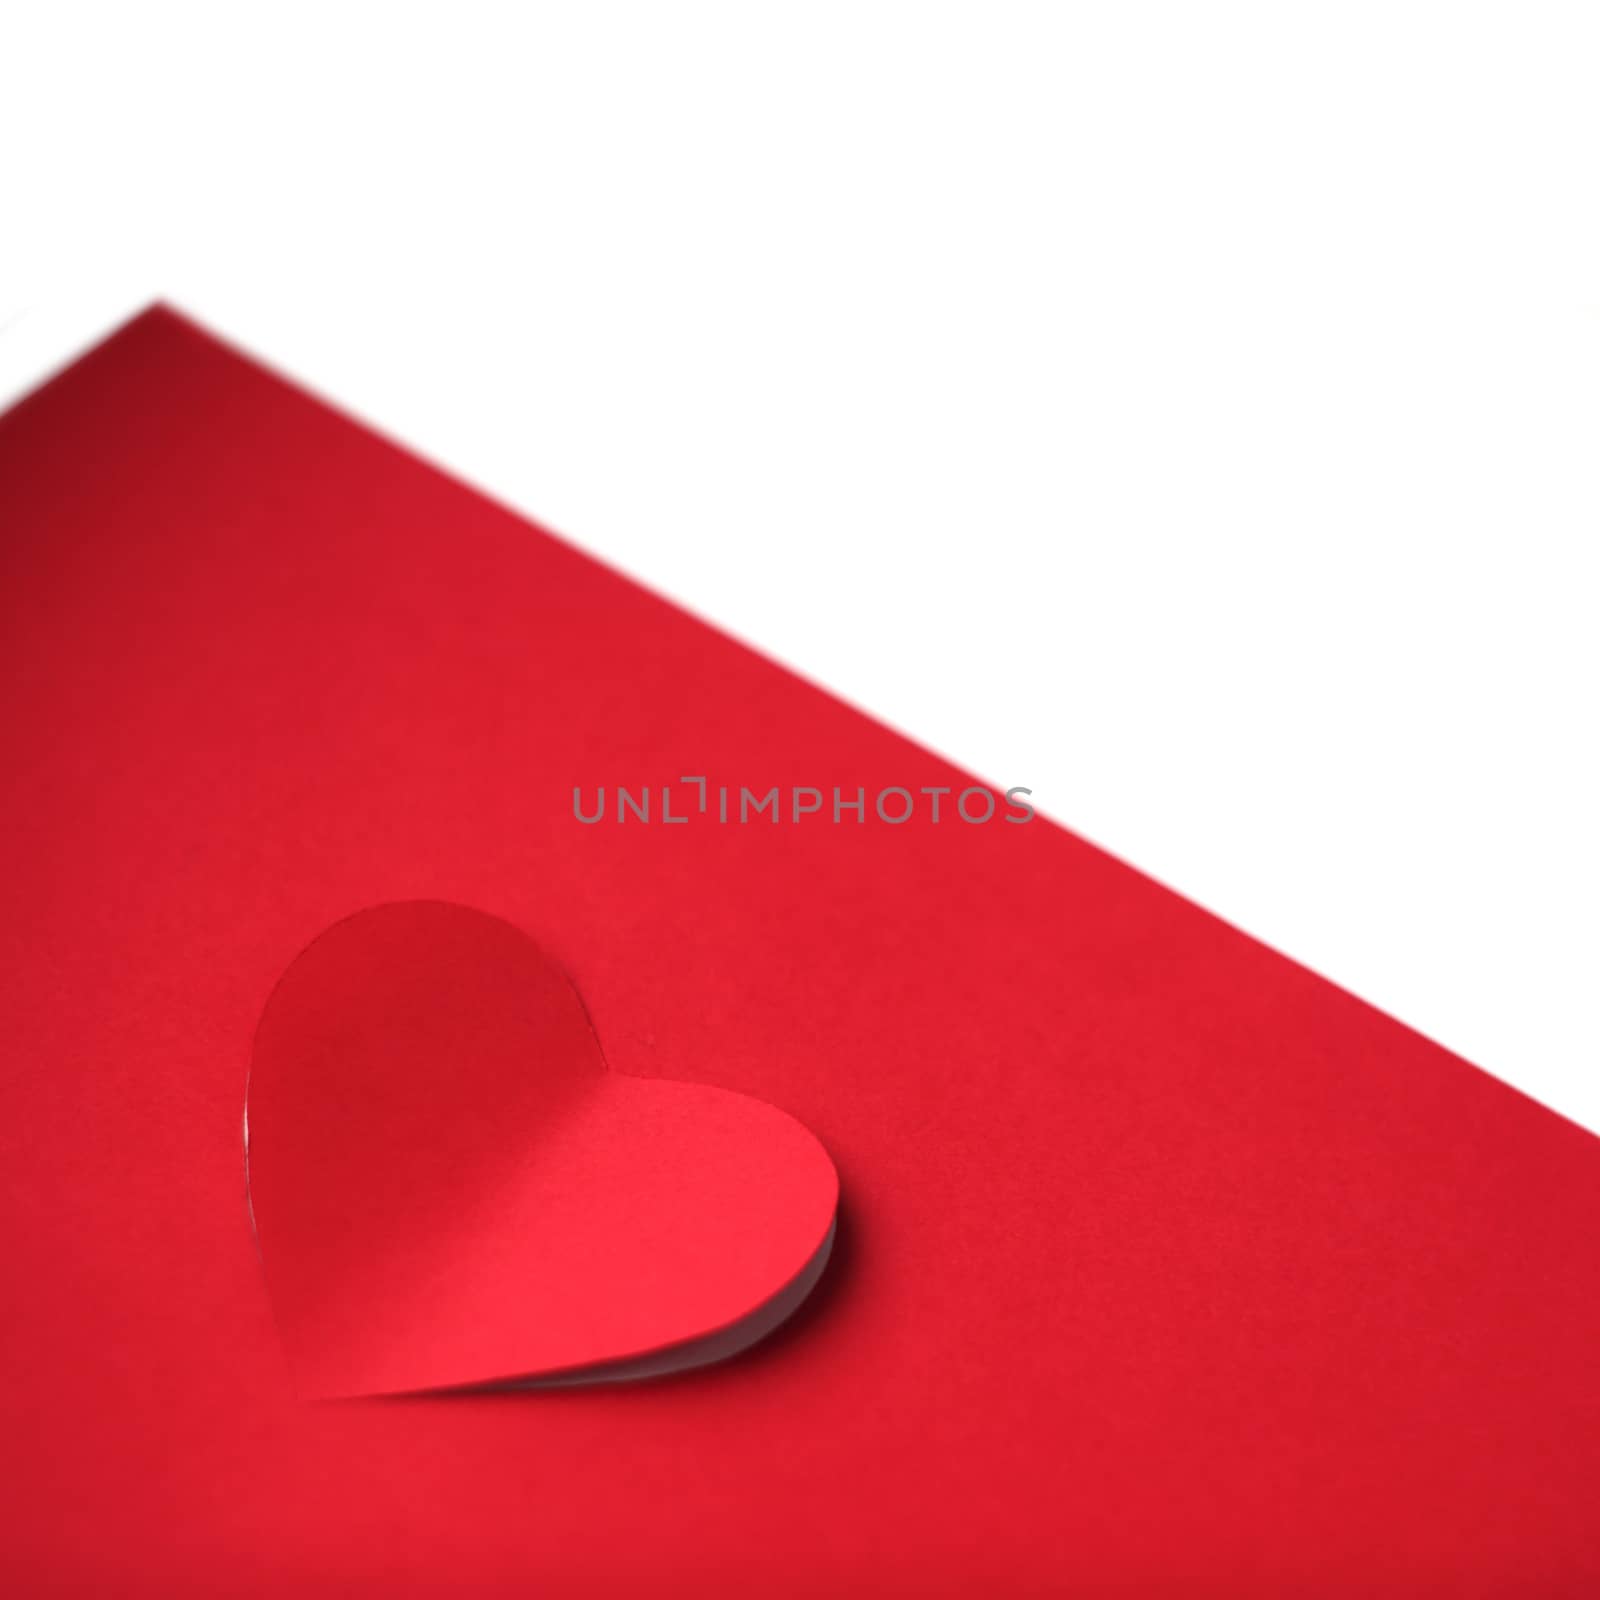 Heart cut in paper background by destillat